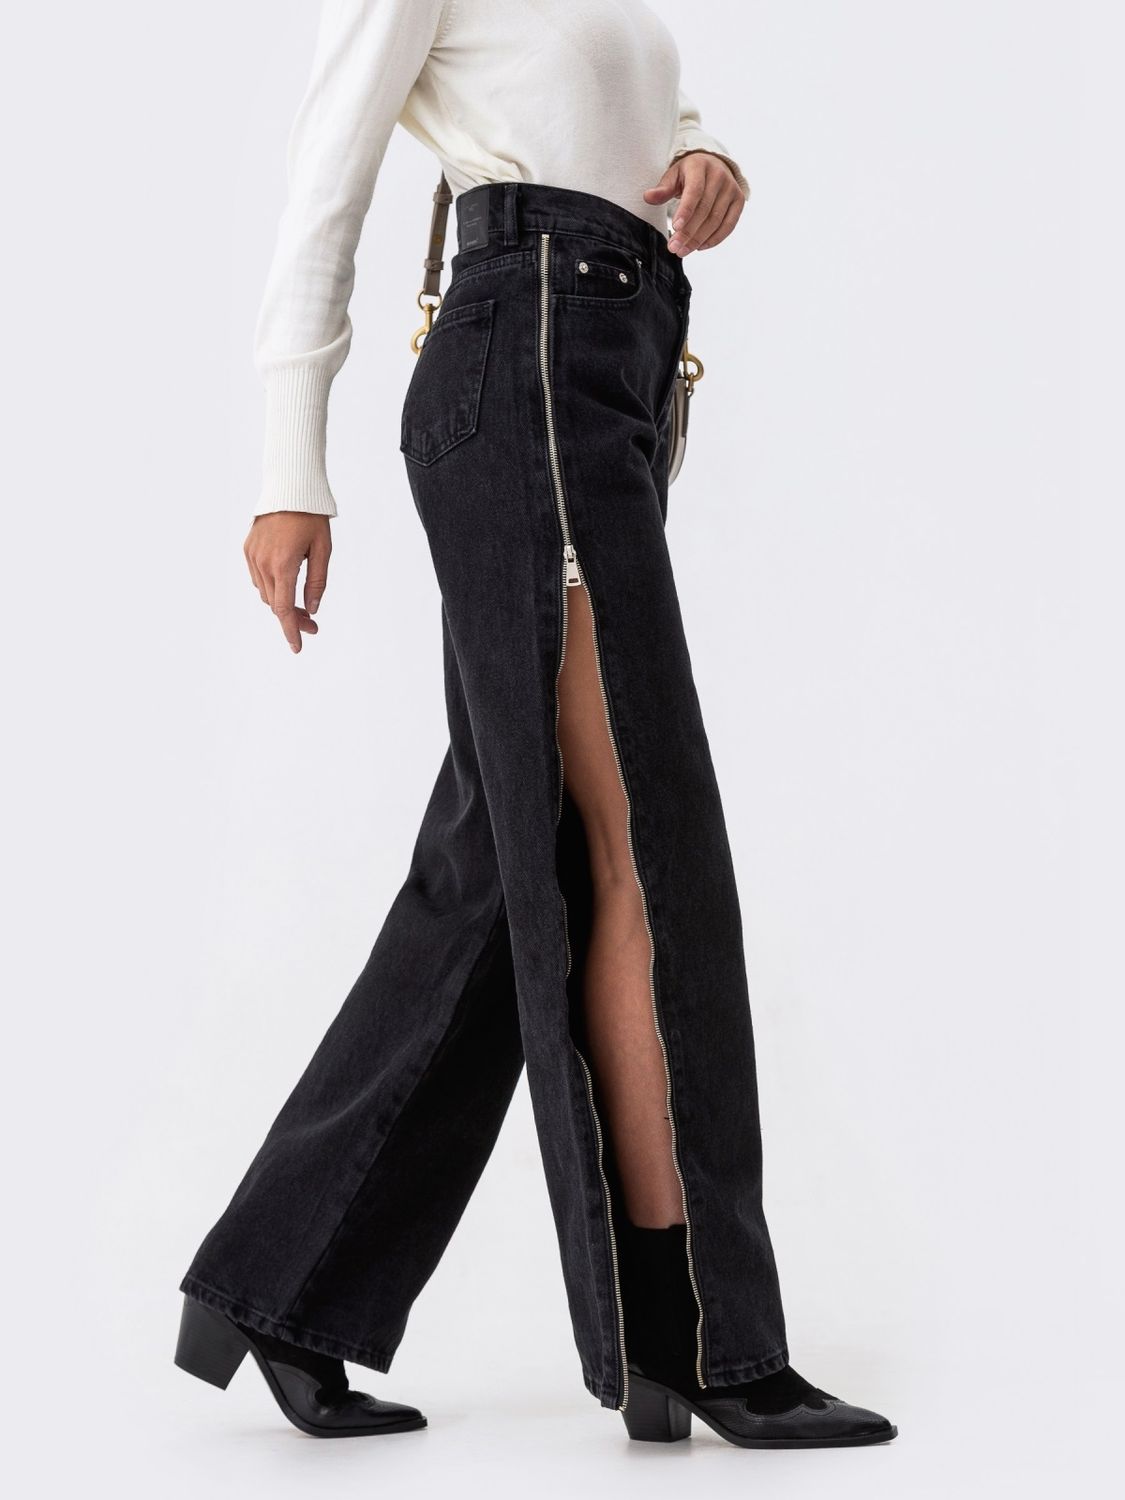 Черные женские джинсы с высокой посадкой - фото